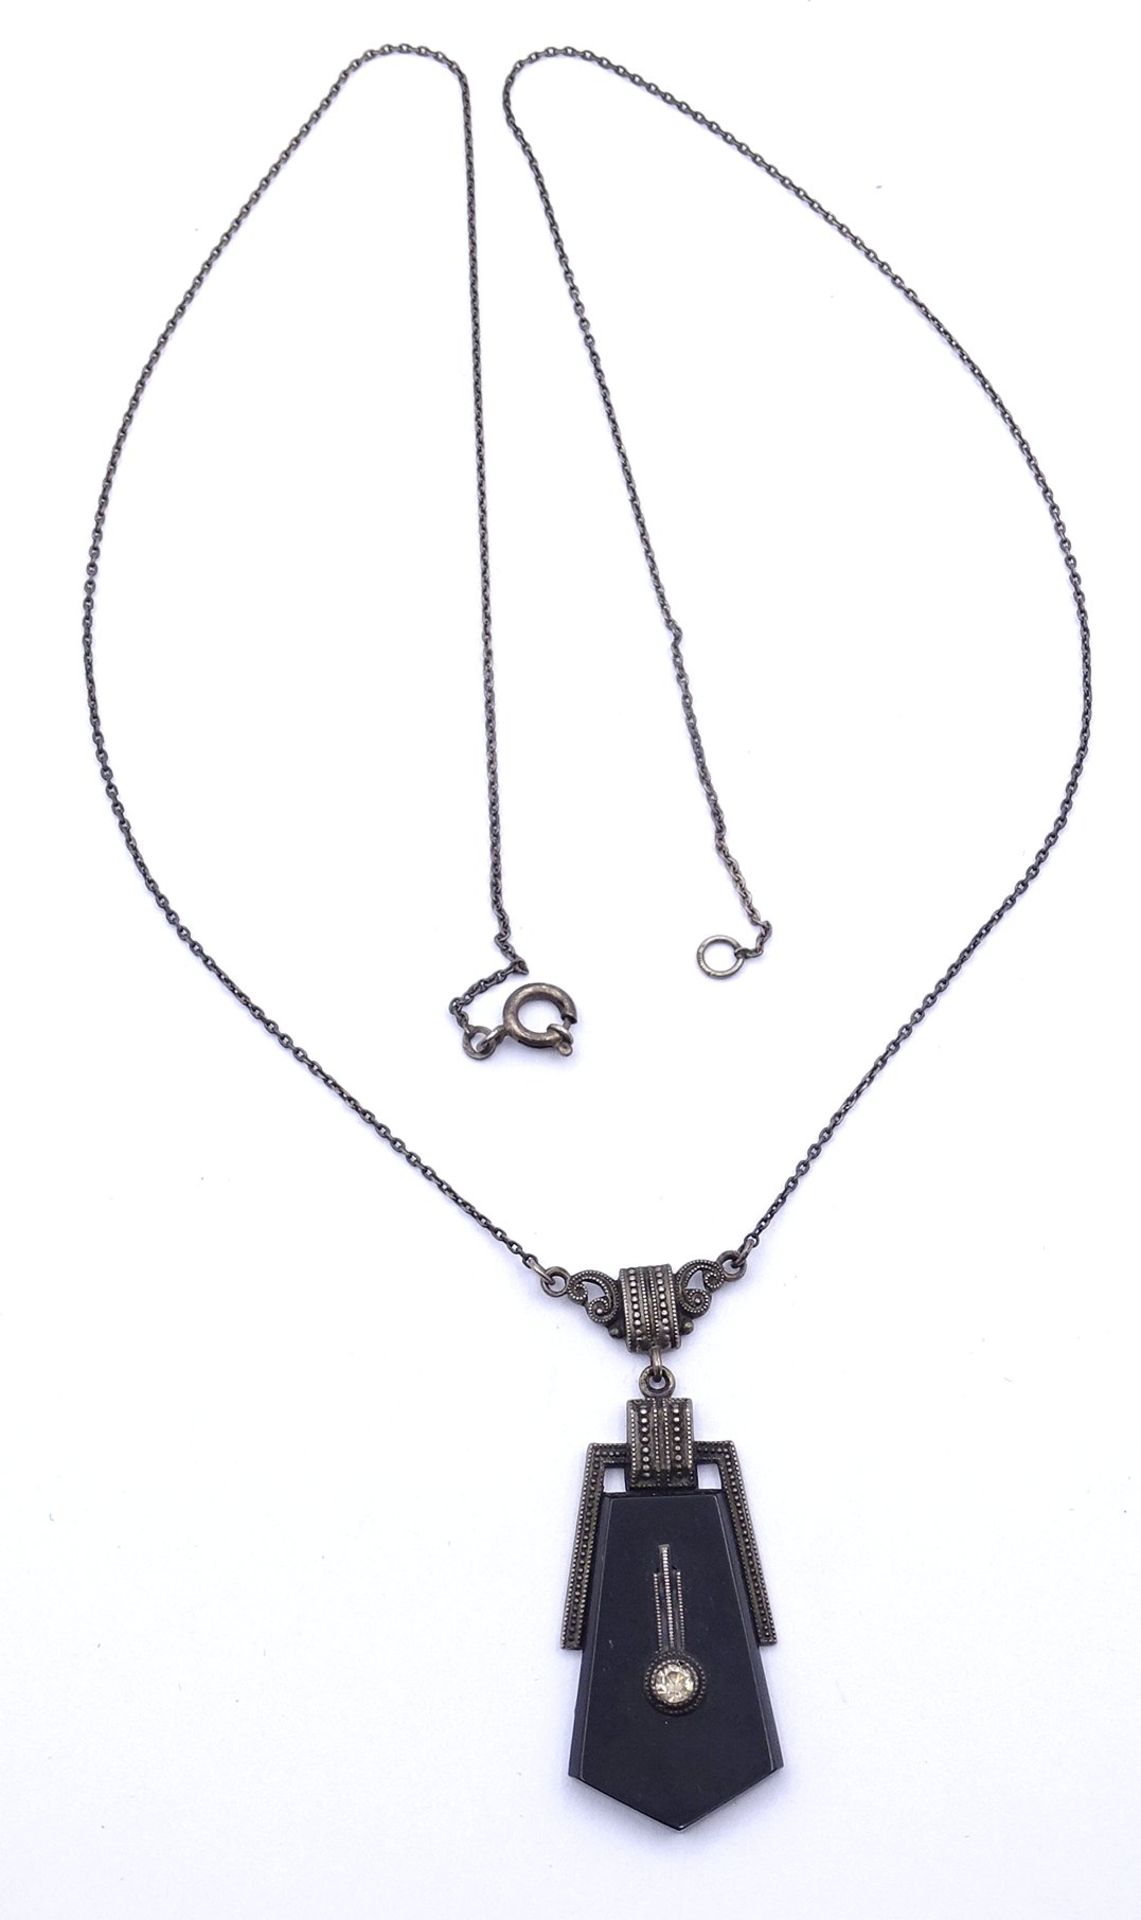 Altes Silber Collier 0.830 mit Onyx und Strass, L. 53cm, 6,3g. - Bild 4 aus 4